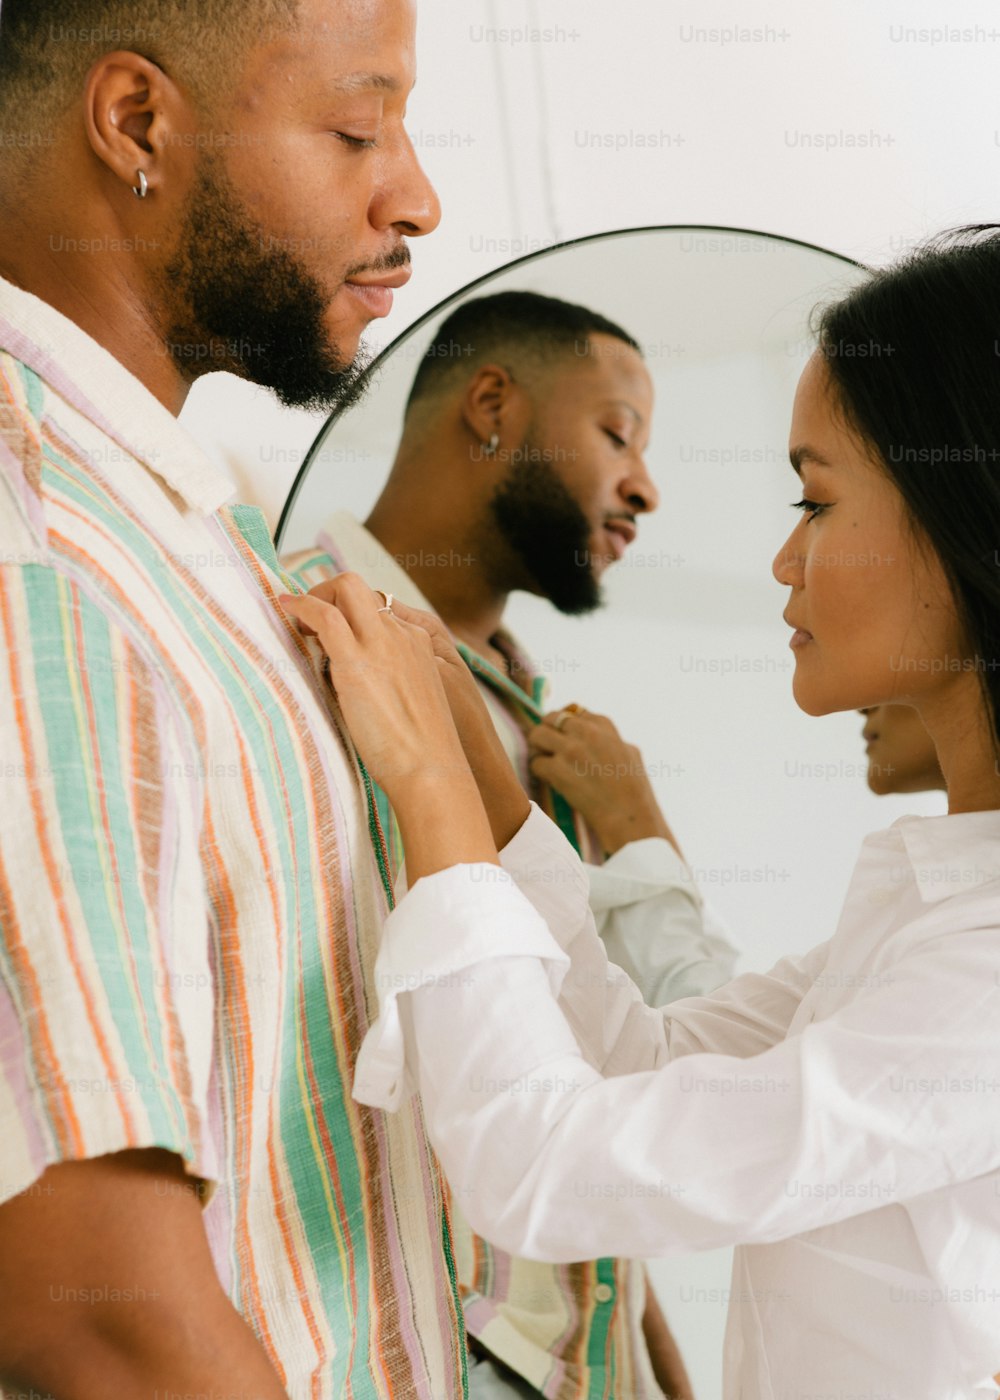 Un hombre ajustando la corbata de una mujer frente a un espejo